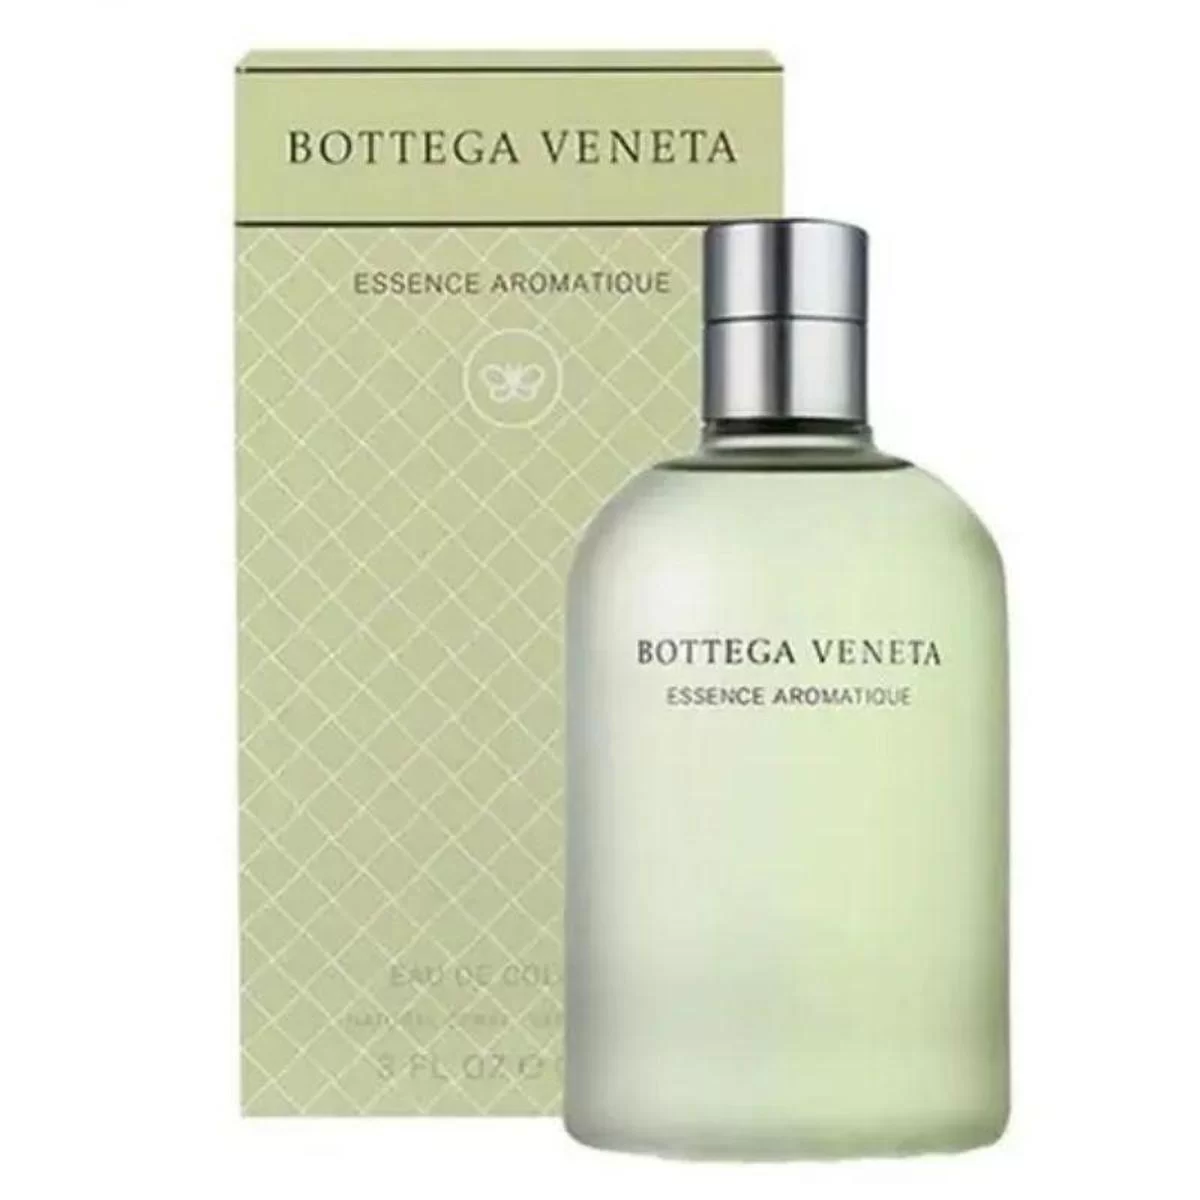 Bottega Veneta Essence Aromatique Cologne 90m...